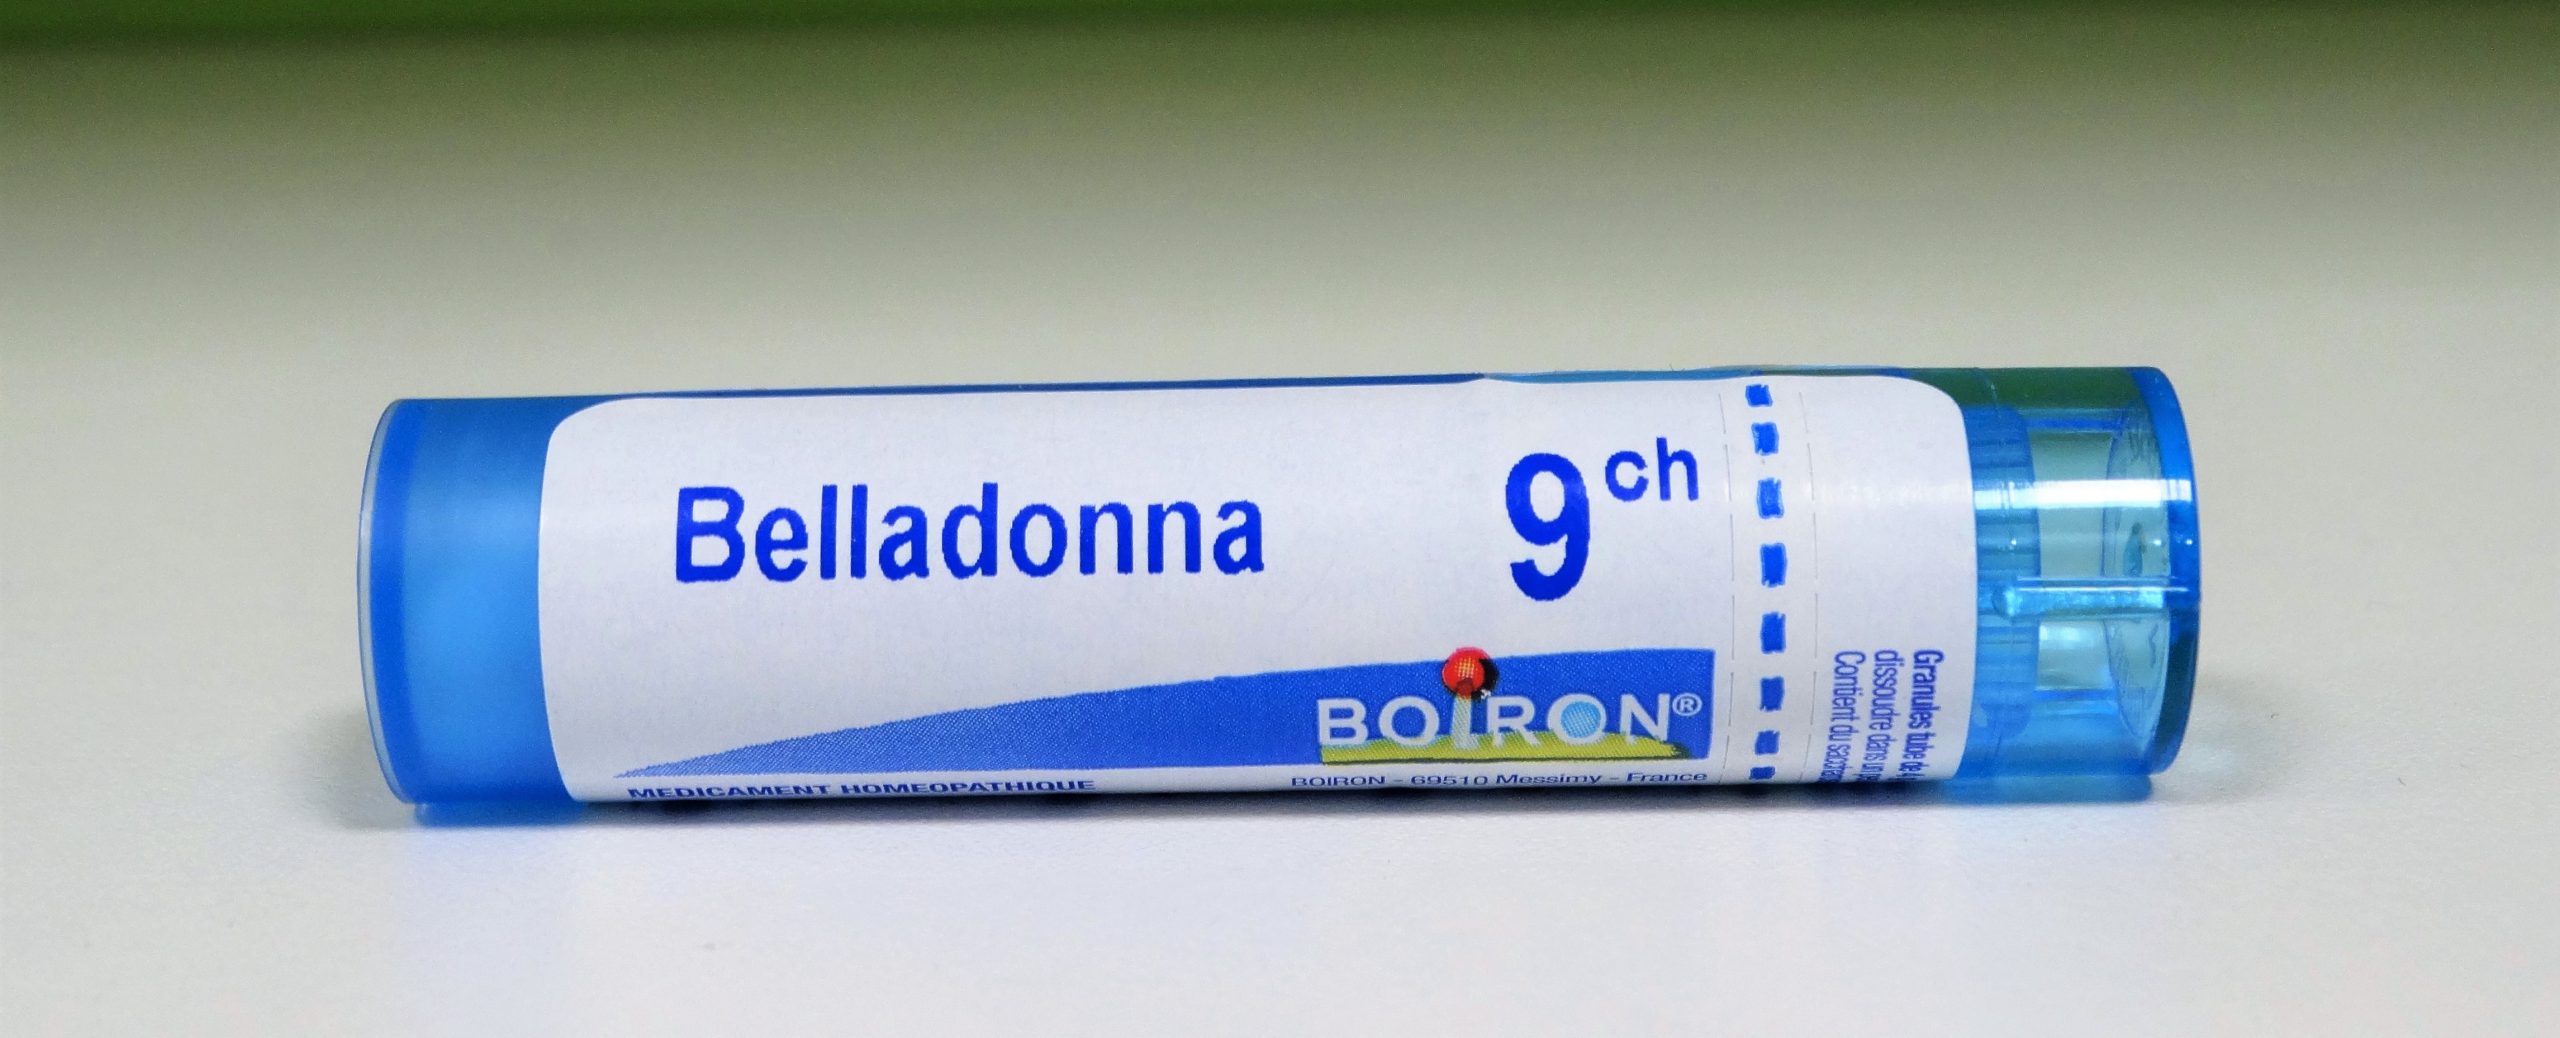 Boiron Belladonna 9CH es un medicamento homeopático tradicionalmente utilizado para tratar diferentes problemas y patologías como la rinofaringitis, anginas, laringotraqueitis; sofocos; insolaciones; crisis hipertensivas; rash escalatiniforme etc.